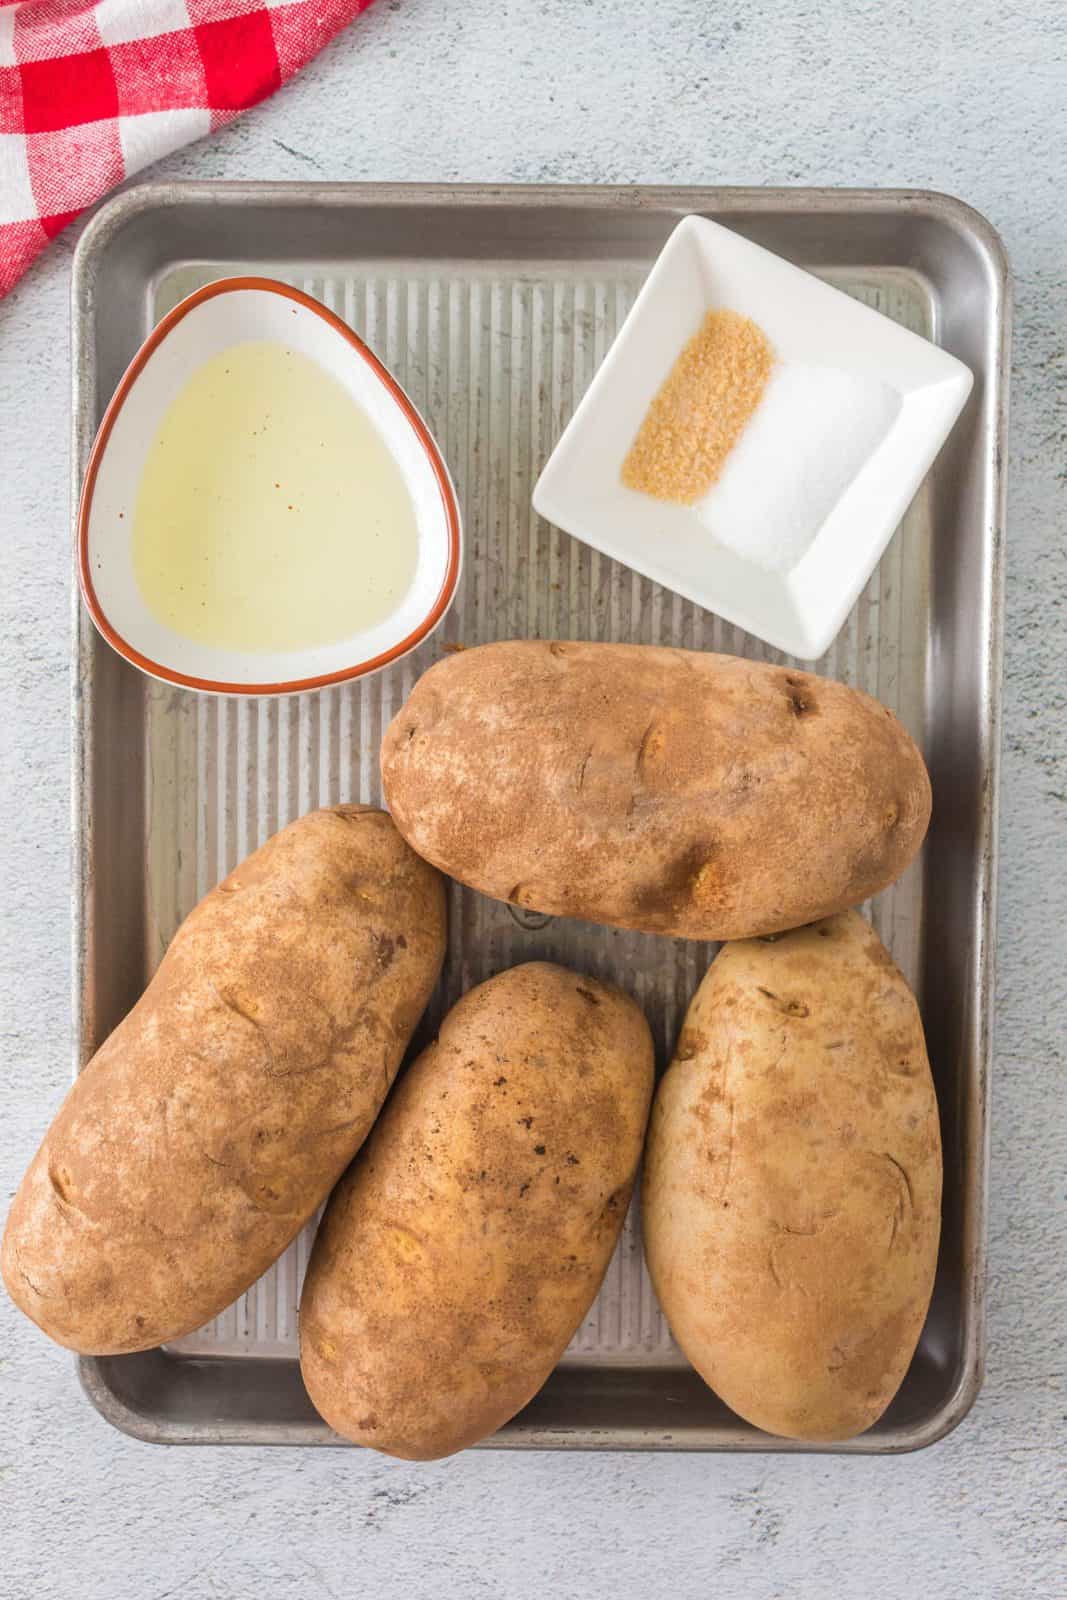 Ingredienti necessari: patate al forno, olio d'oliva, sale e sale all'aglio.